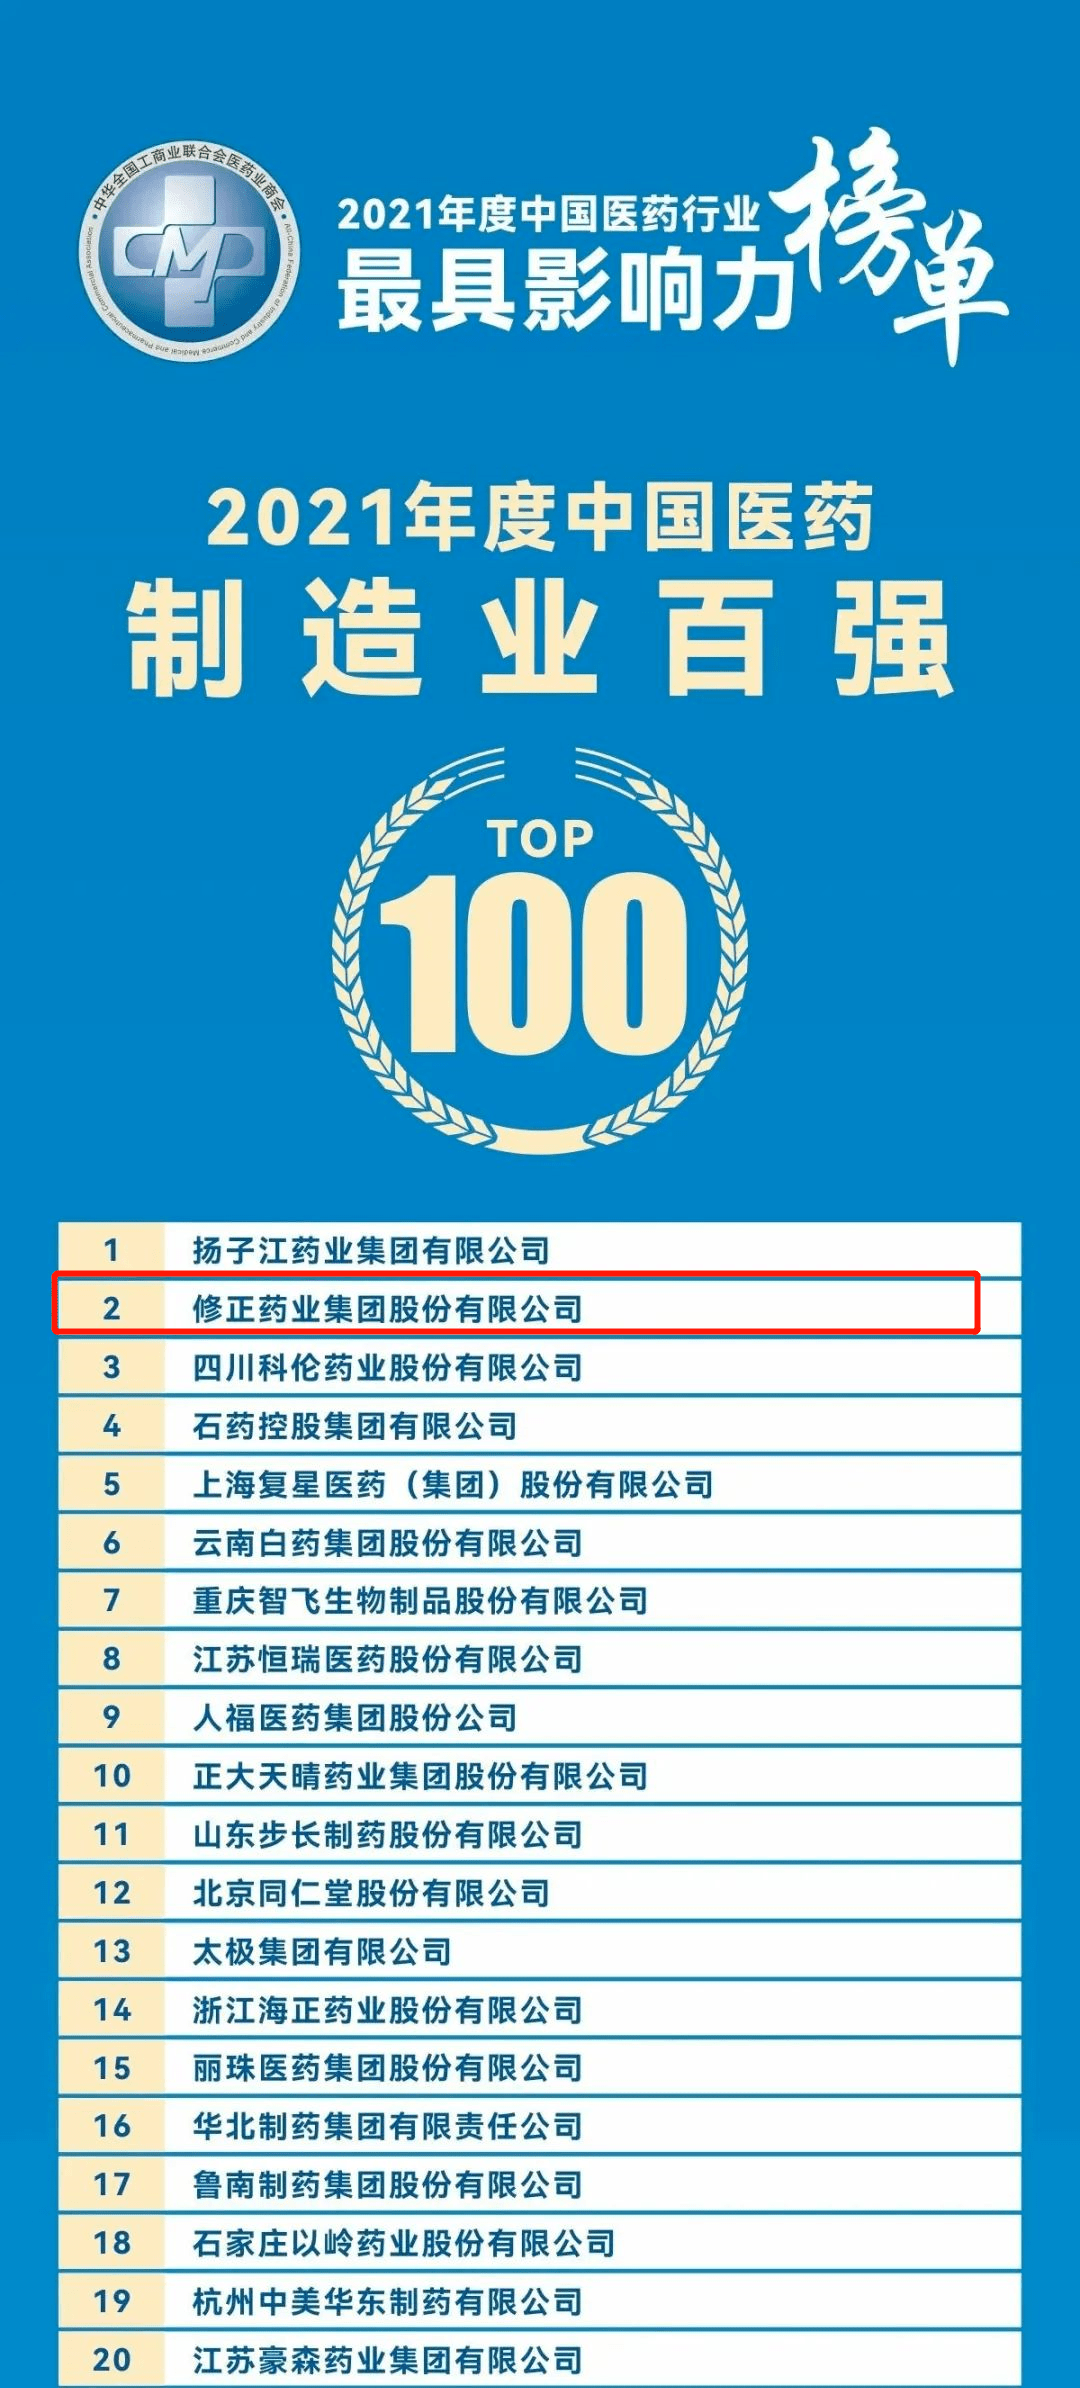 修正荣获7项殊荣 | 2022-2023年度中国医药行业最具影响力榜单发布-新闻频道-和讯网